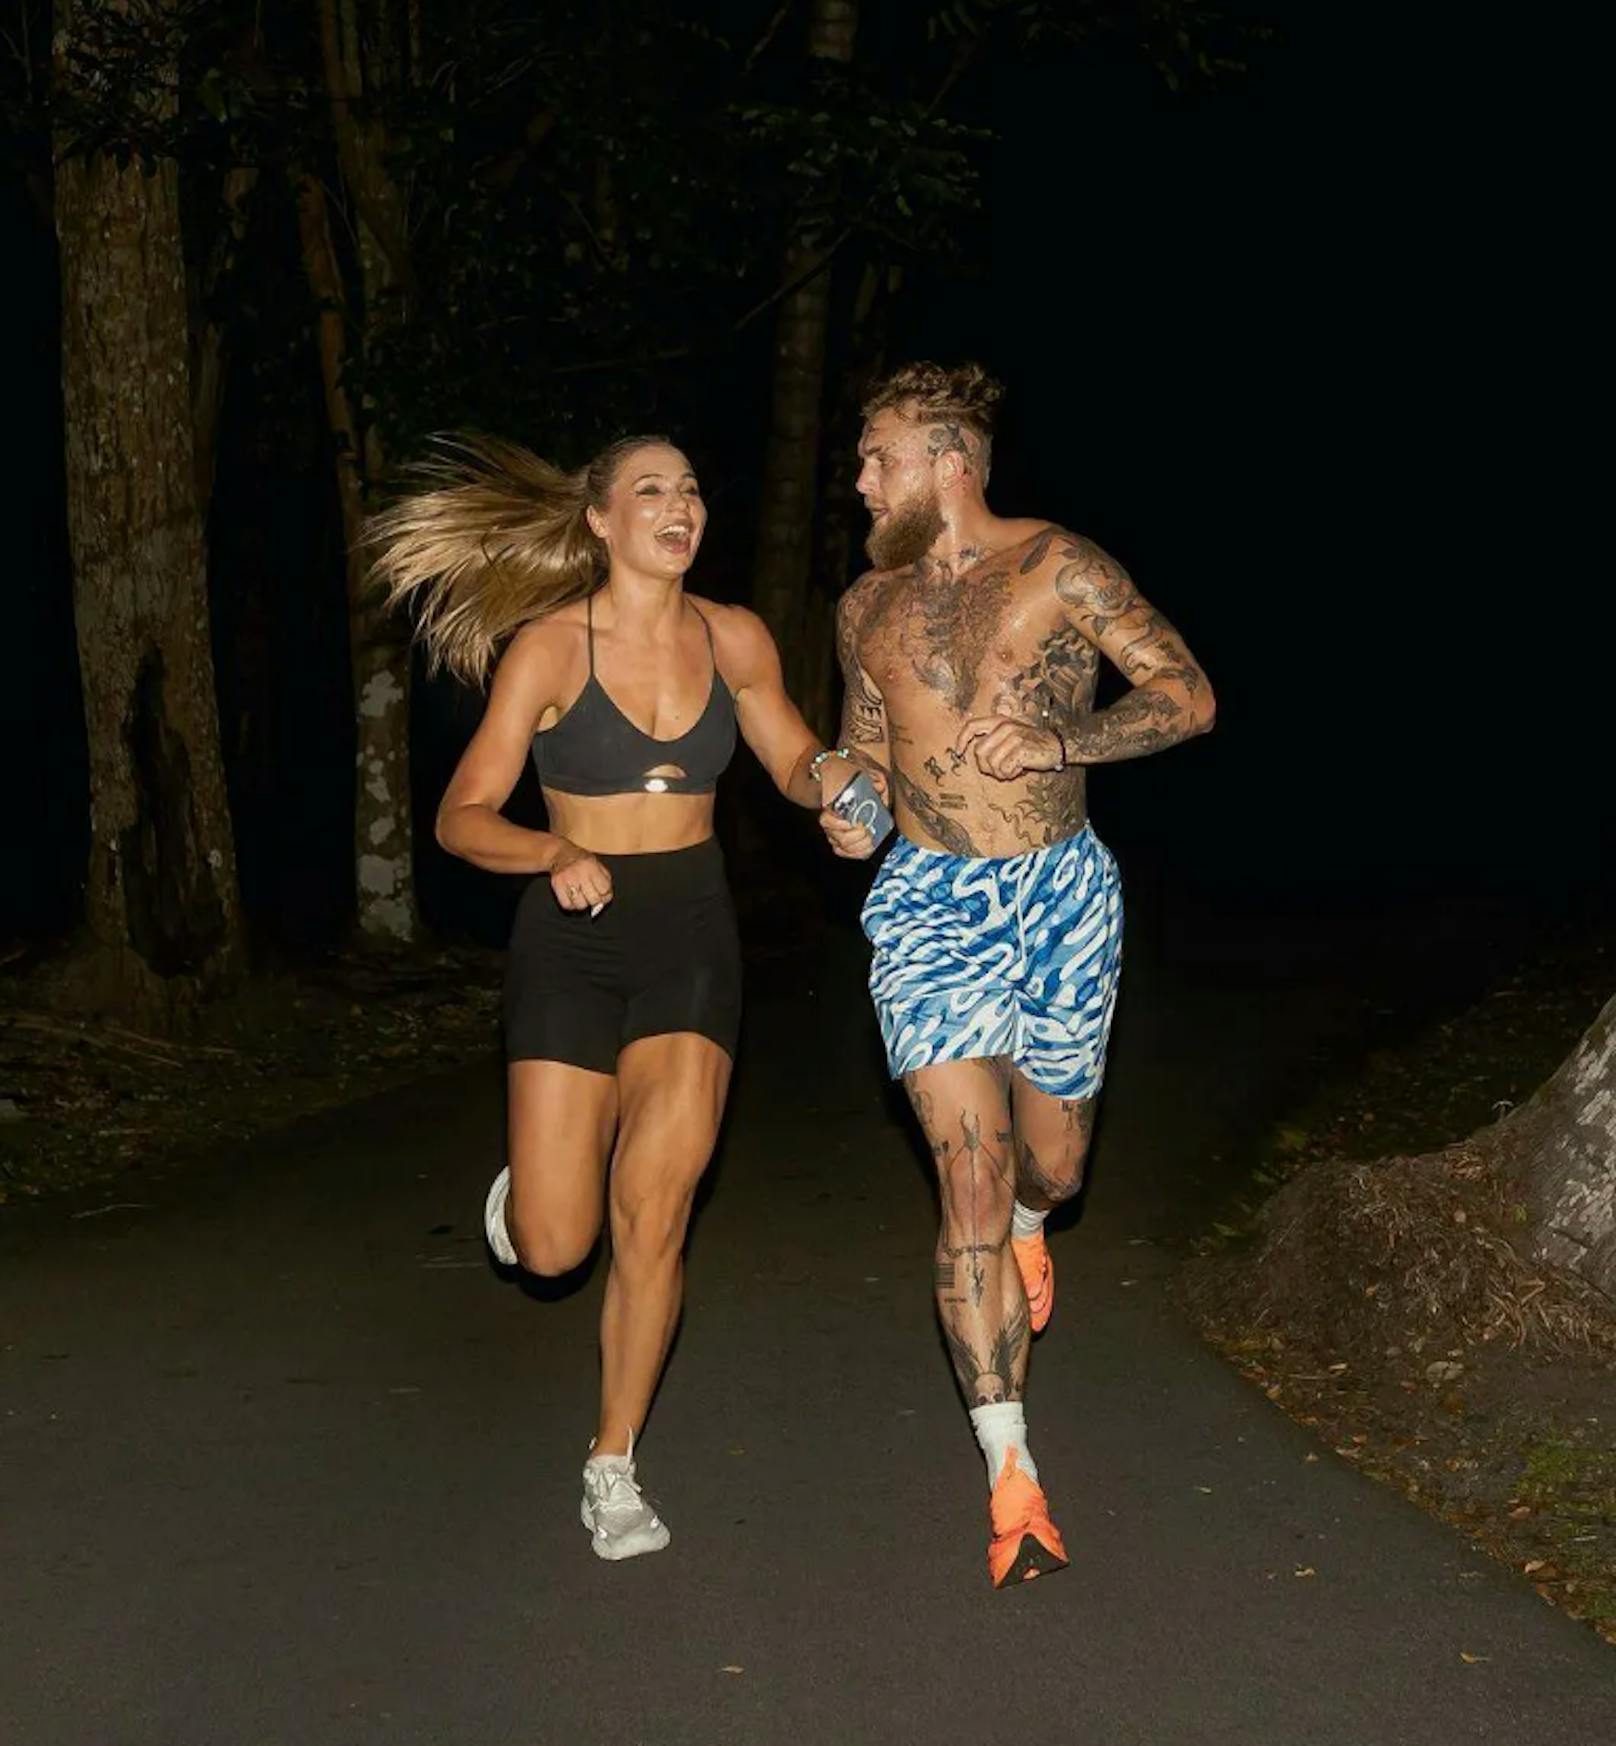 Jutta Leerdam und Jake Paul beim Joggen – mit gemeinsamen Bildern versetzen die Sport-Stars das Netz in Aufruhr.